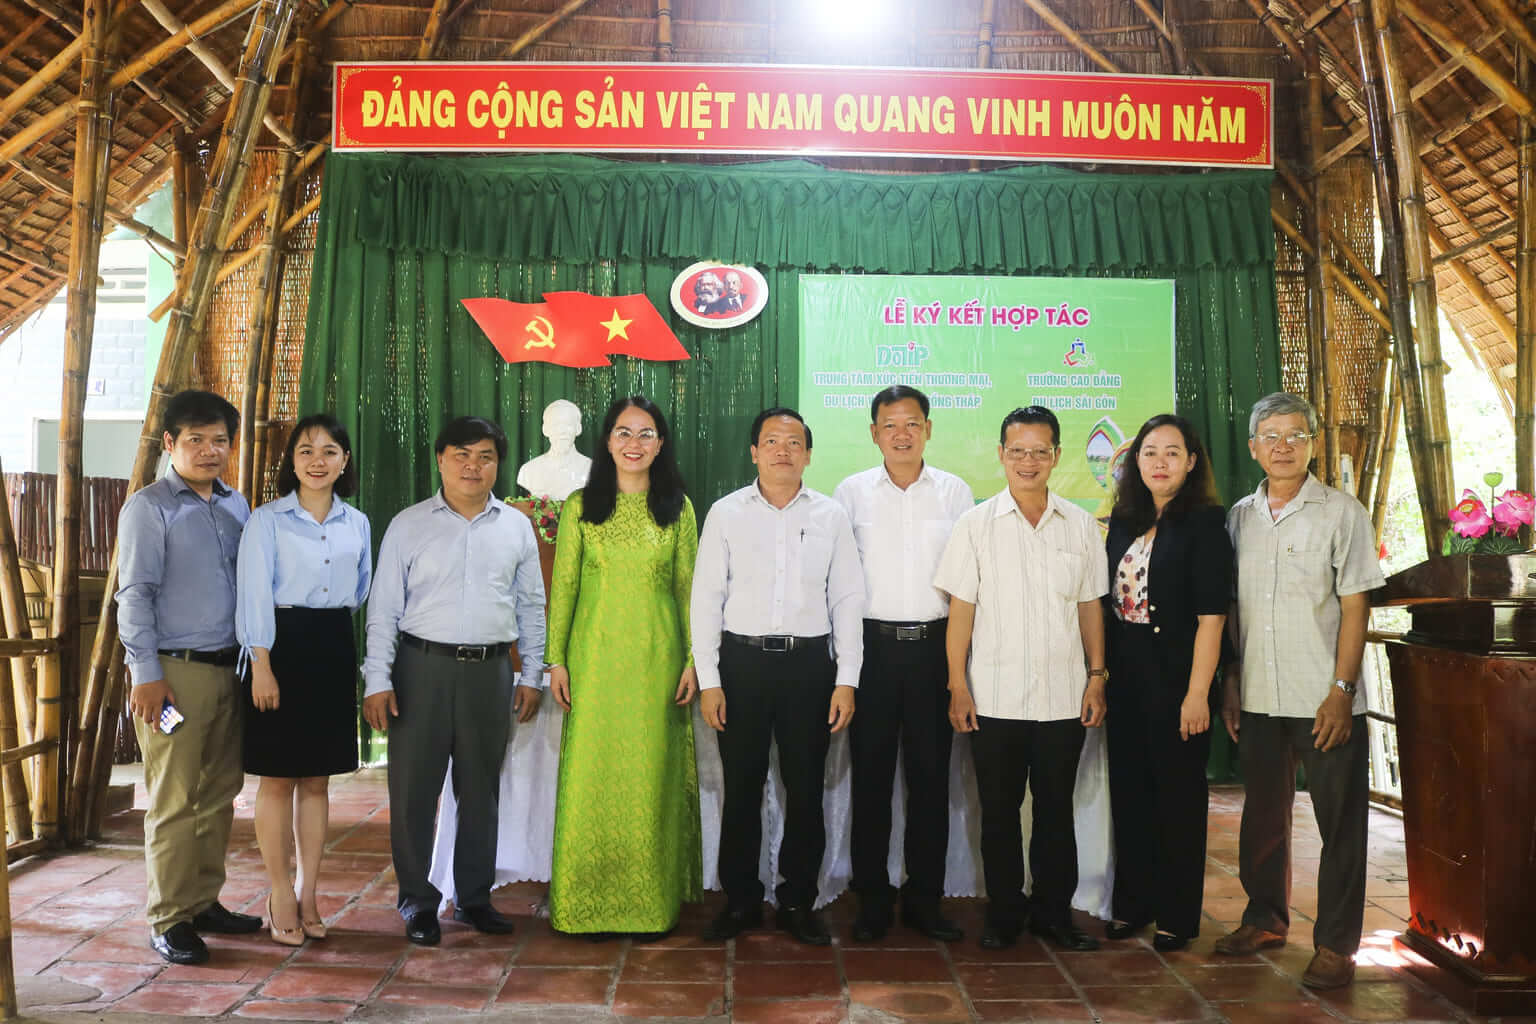 Đại diện Trường Cao đẳng Du lịch Sài Gòn và Trung tâm Xúc tiến Thương mại, Du lịch và Đầu tư Đồng Tháp